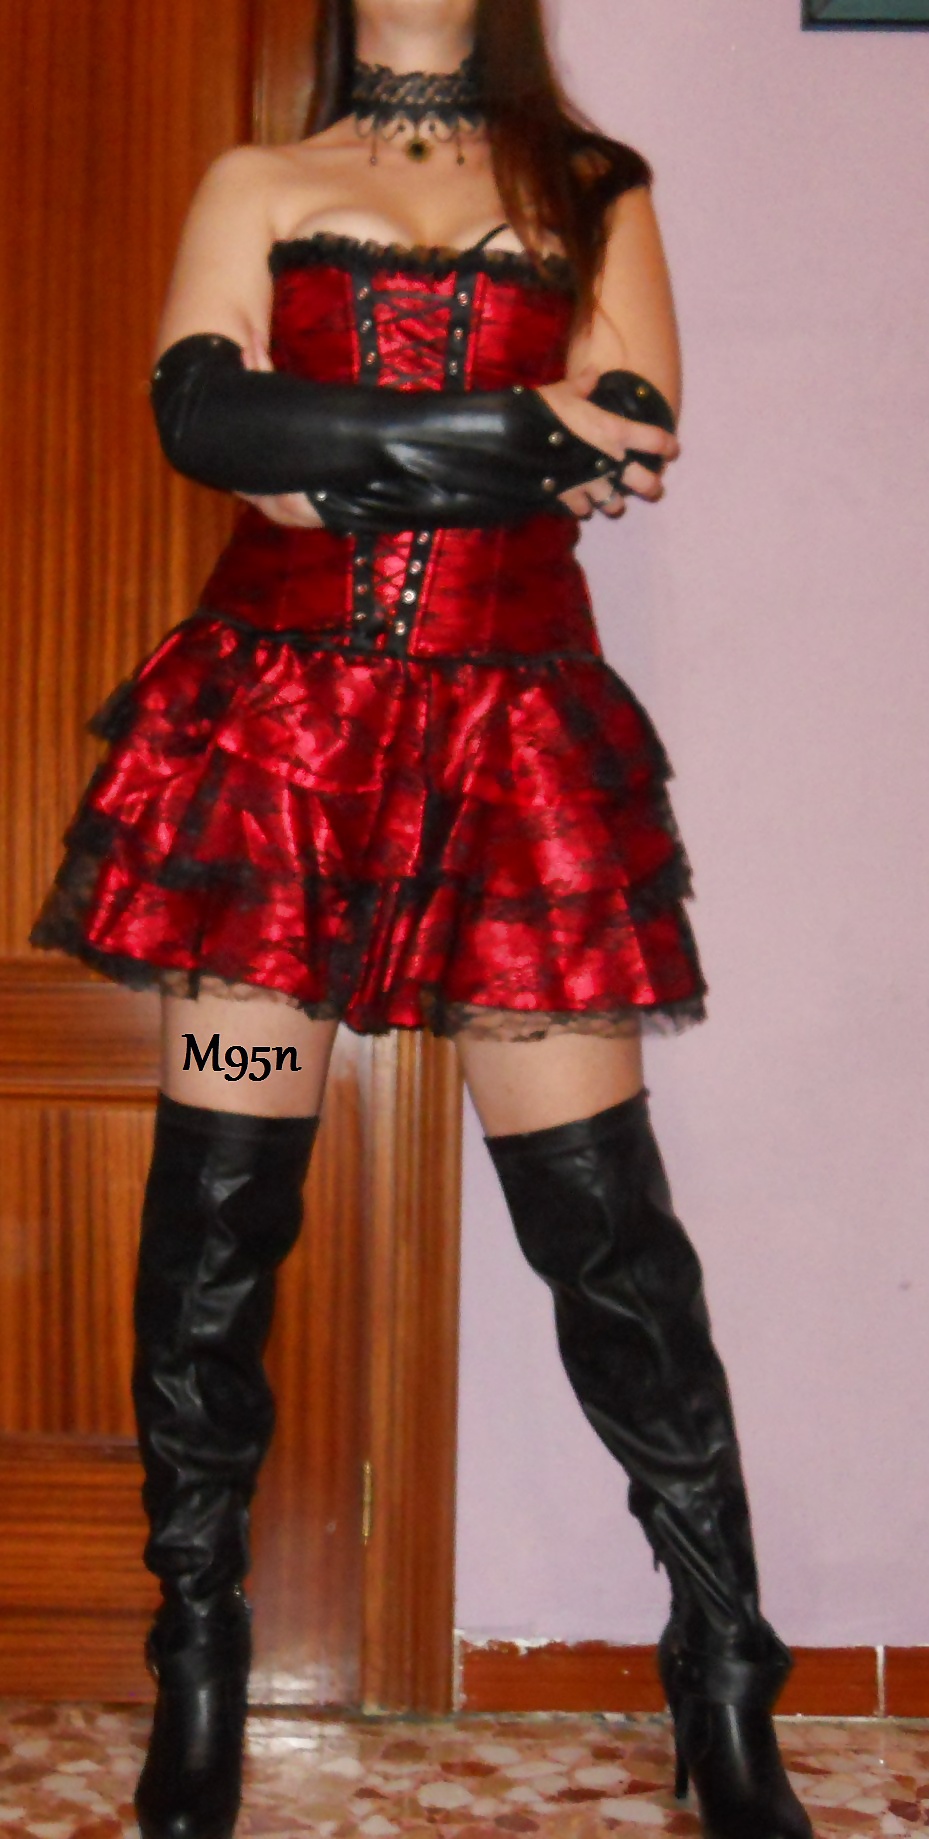 Con mi corset y falda roja y negra!!! #32842565